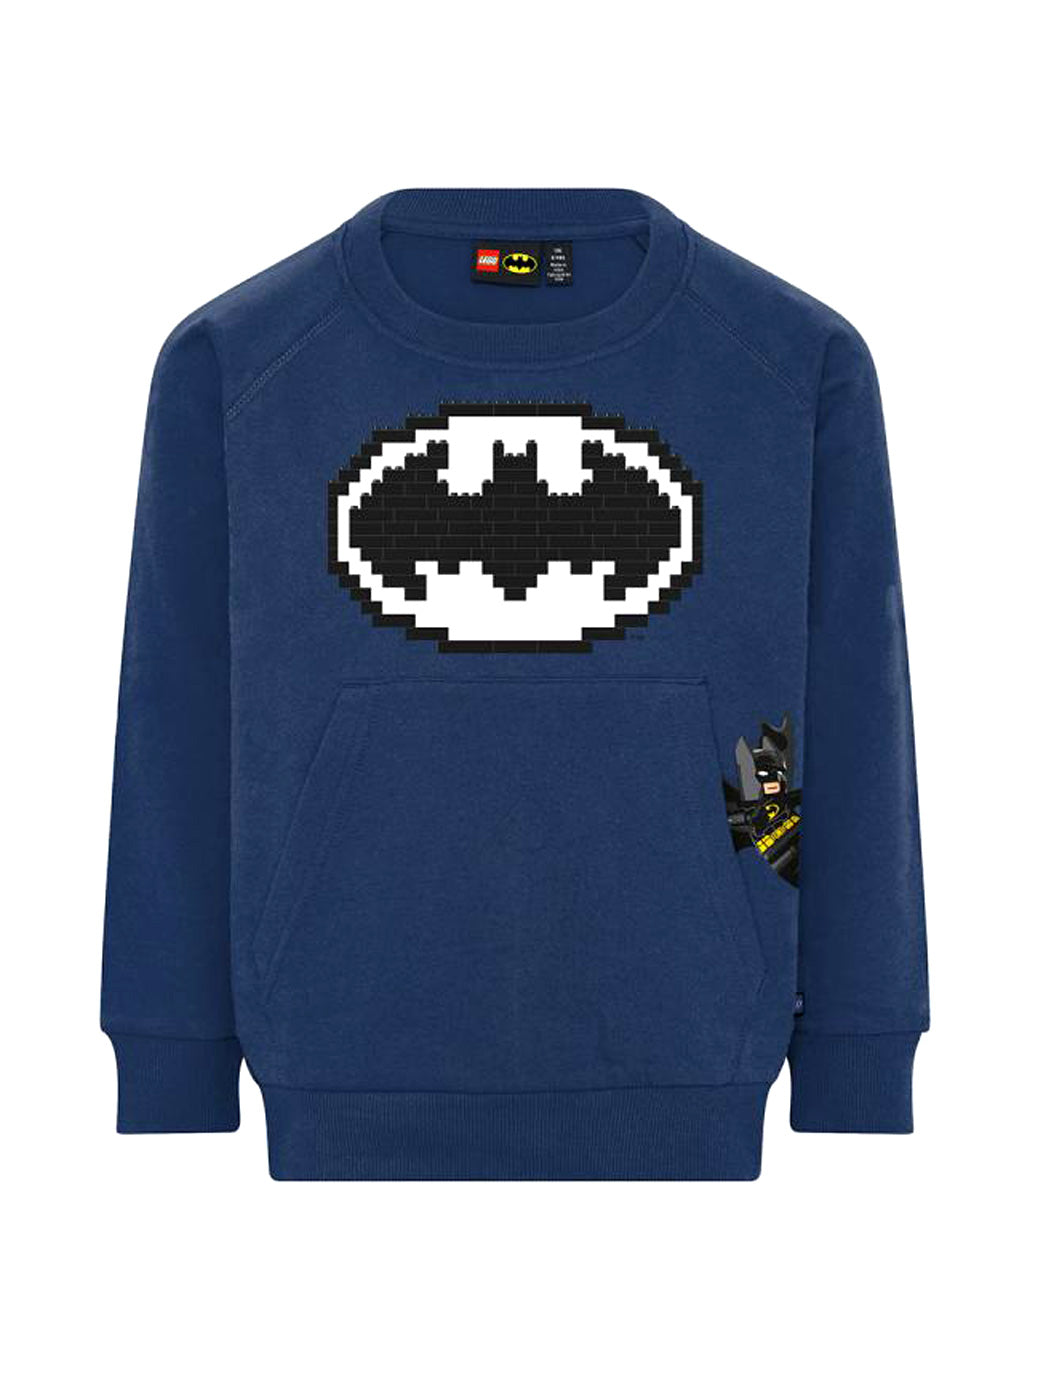 LEGO Ninjago blue sweatshirt long-sleeved-LWSTORM 615